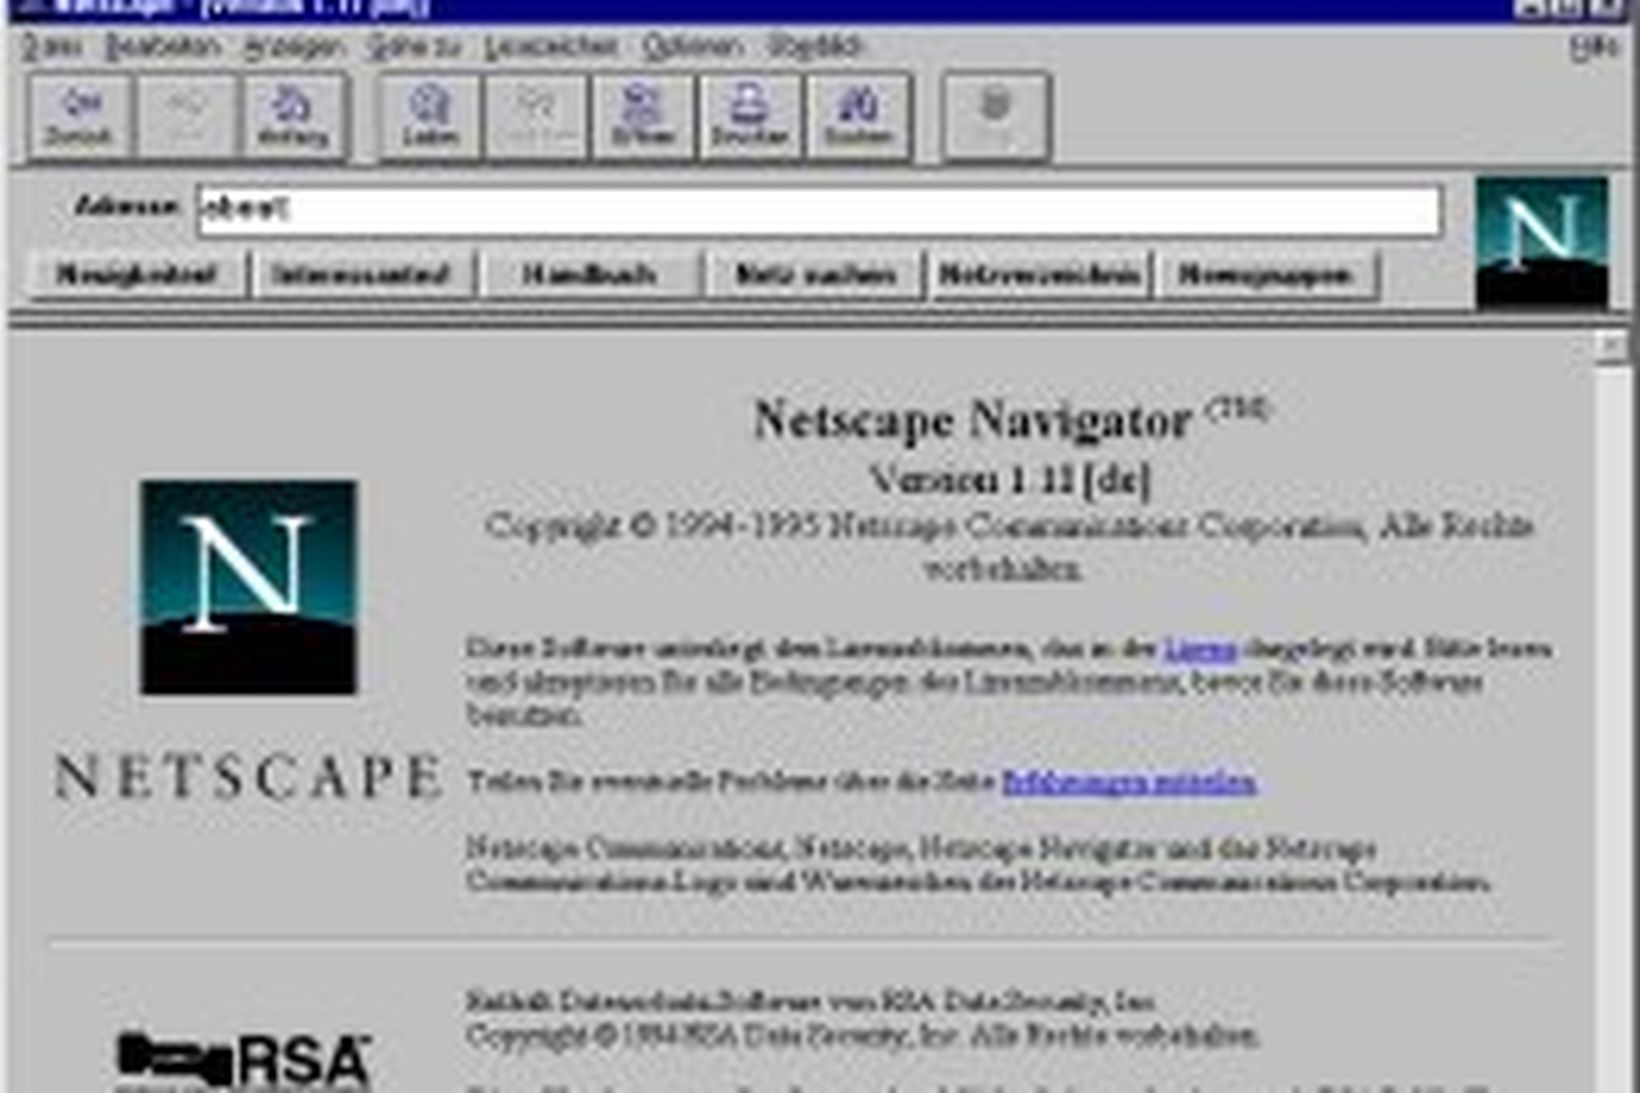 Netscape þótti byltingarkenndur árið 1994, en þætti líklega heldur takmarkaður …